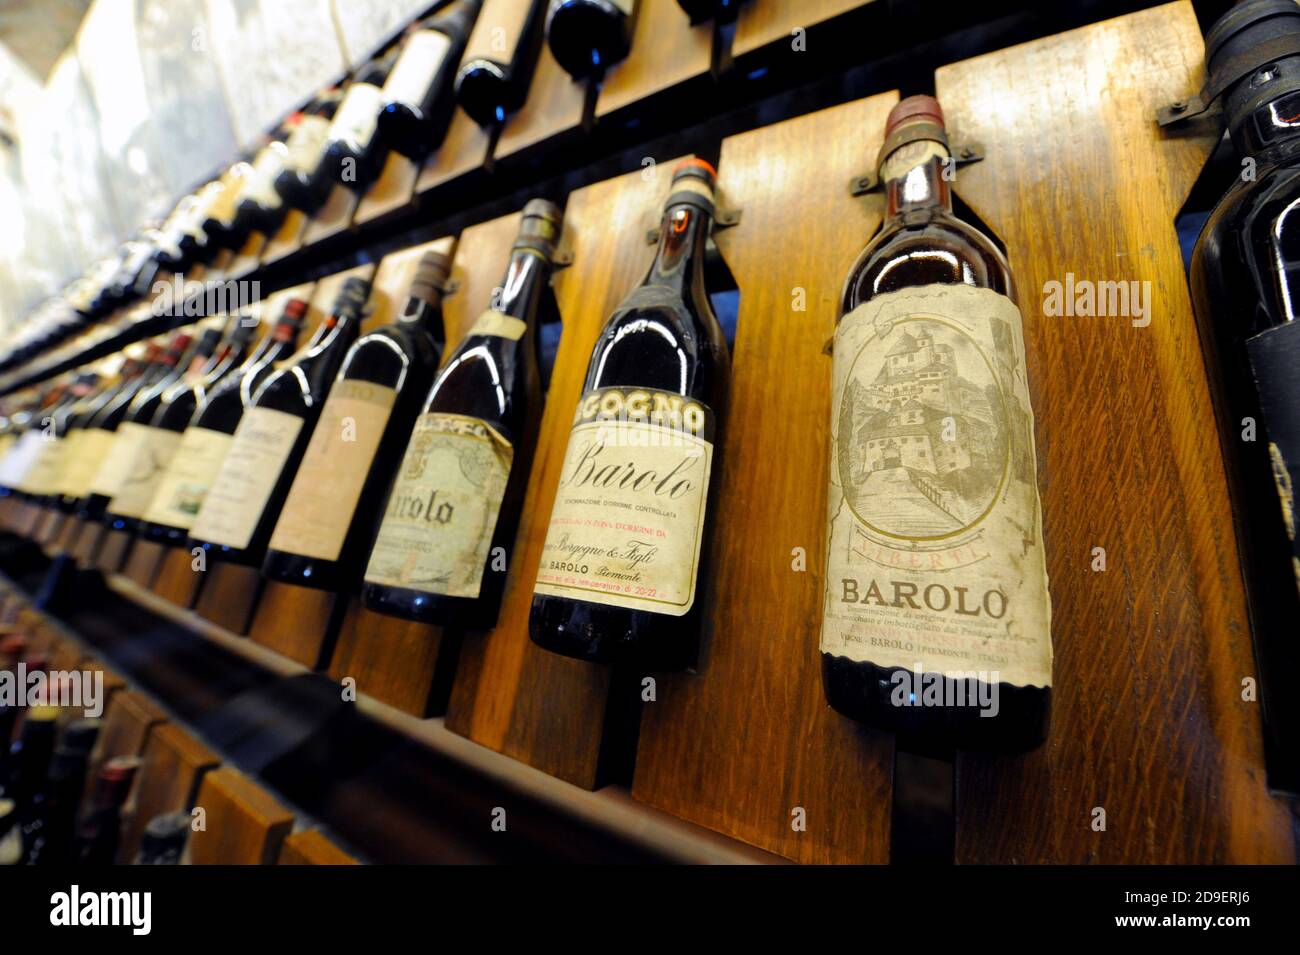 Bouteilles de vin rouge vintage exposées au musée du vin Barolo, à Barolo, Piemonte, Italie. Banque D'Images